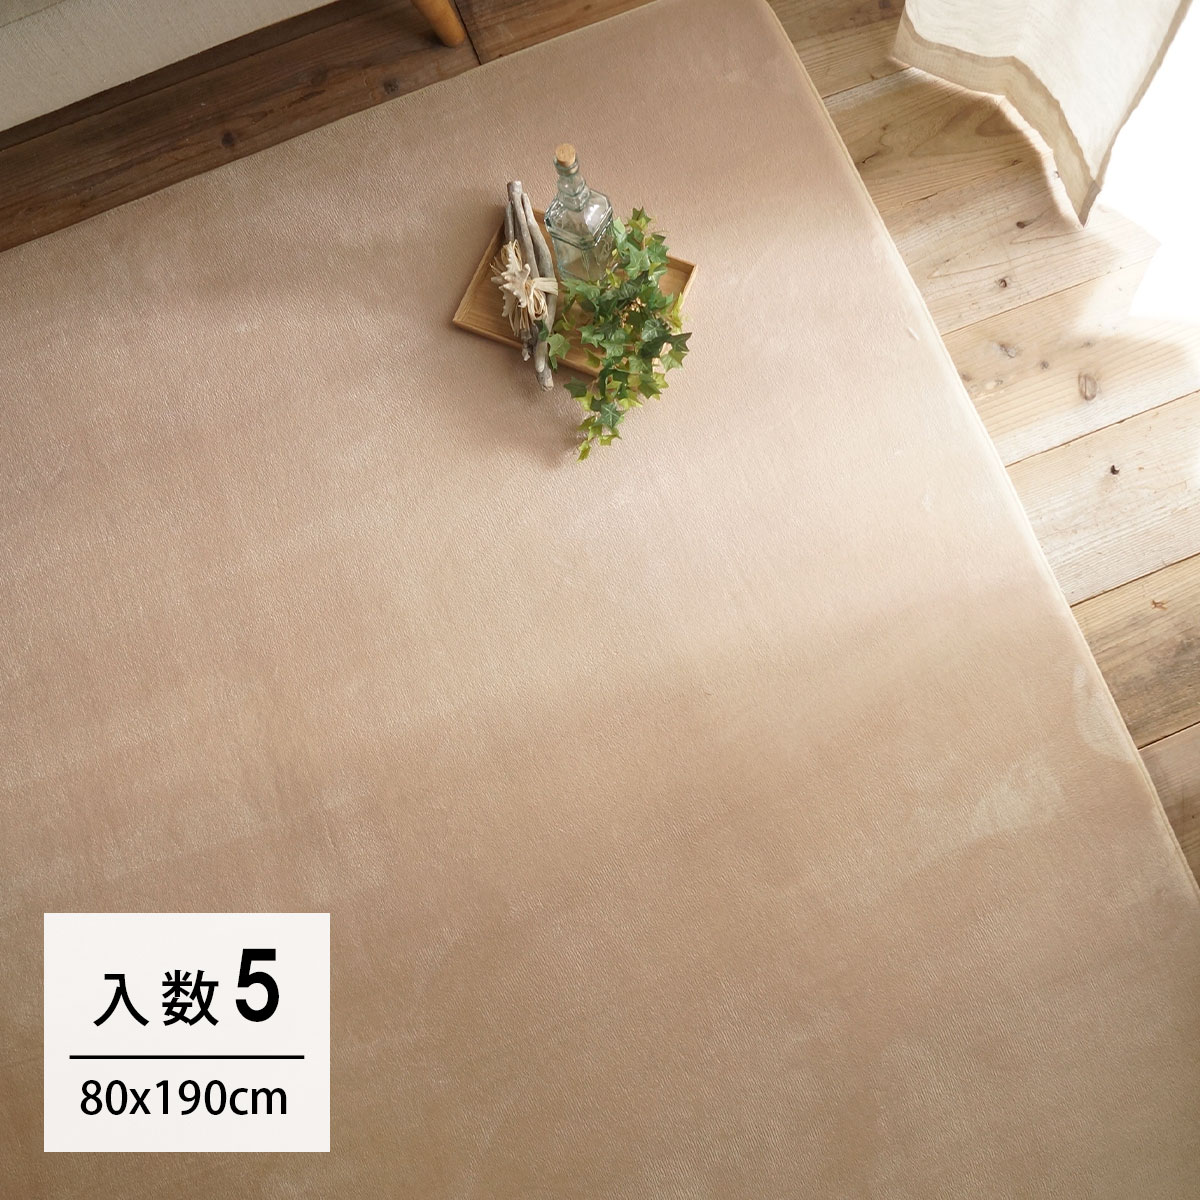 【カートン単位】80x190cm ホリデープラス サンド